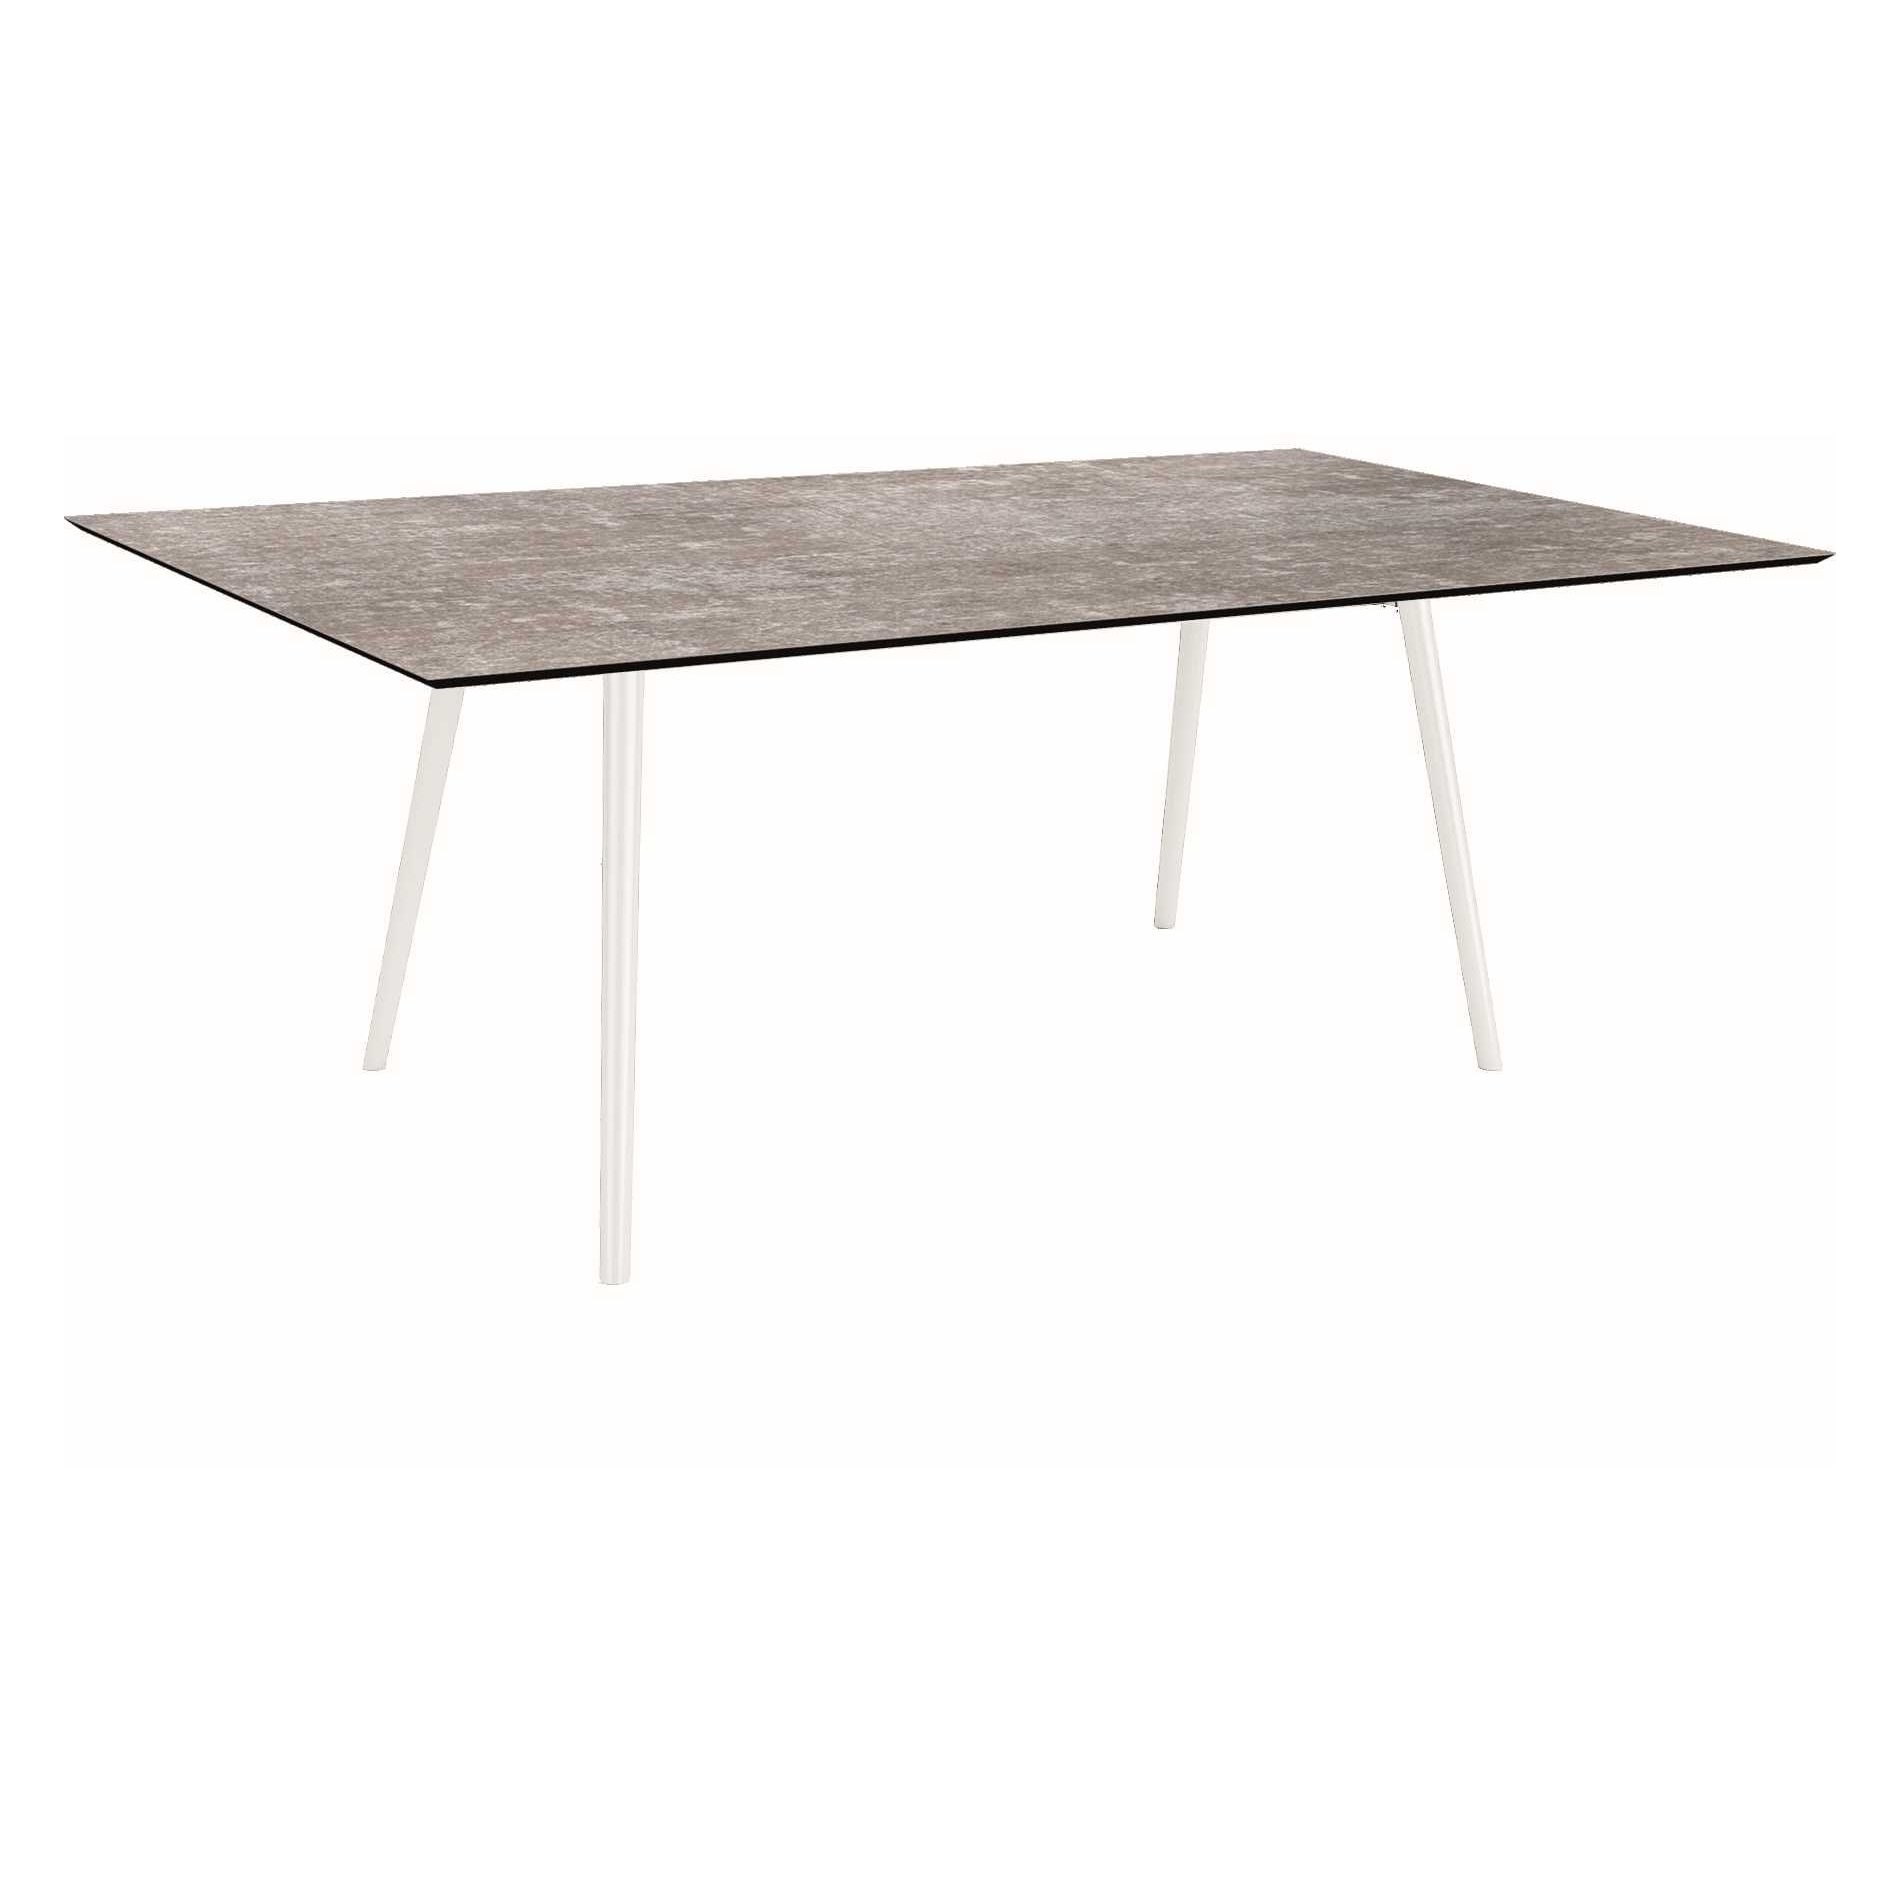 Stern Tisch "Interno", Größe 180x100cm, Alu weiß, Rundrohr, Tischplatte HPL Metallic Grau